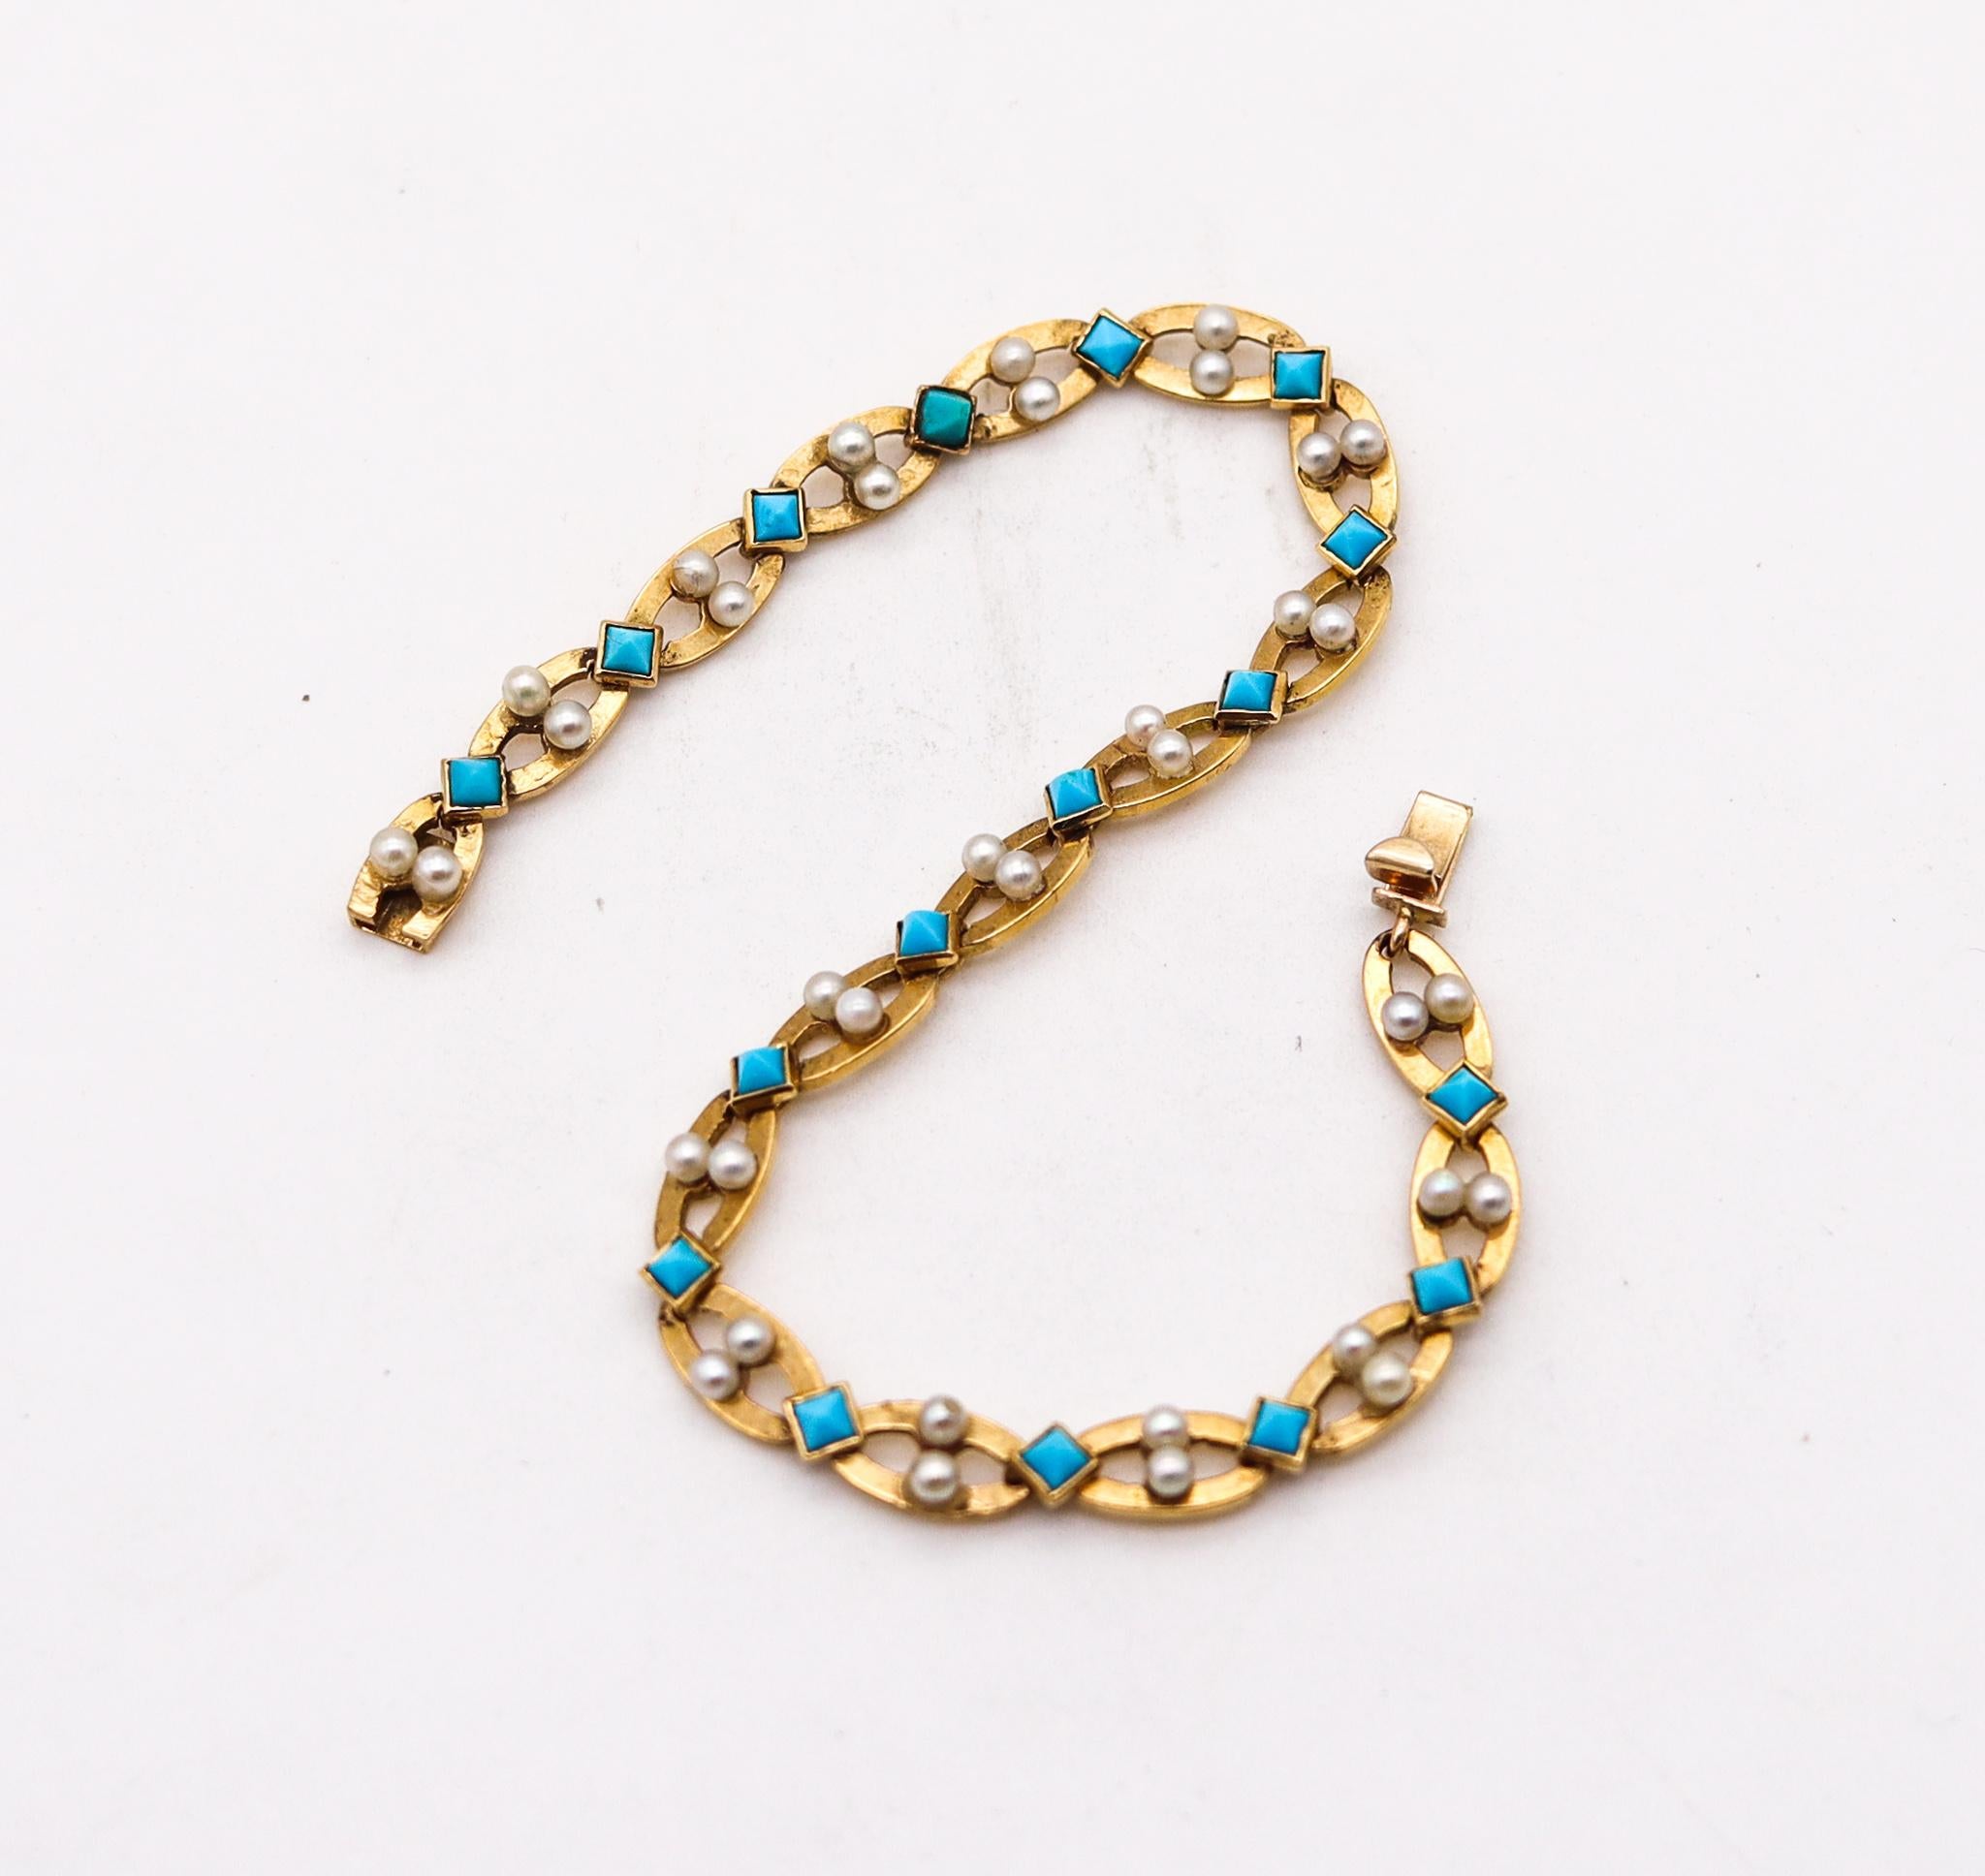 Post-War Cartier Paris 1950 George L'Enfant Bracelet 18Kt Gold With Turquoises & Pearls